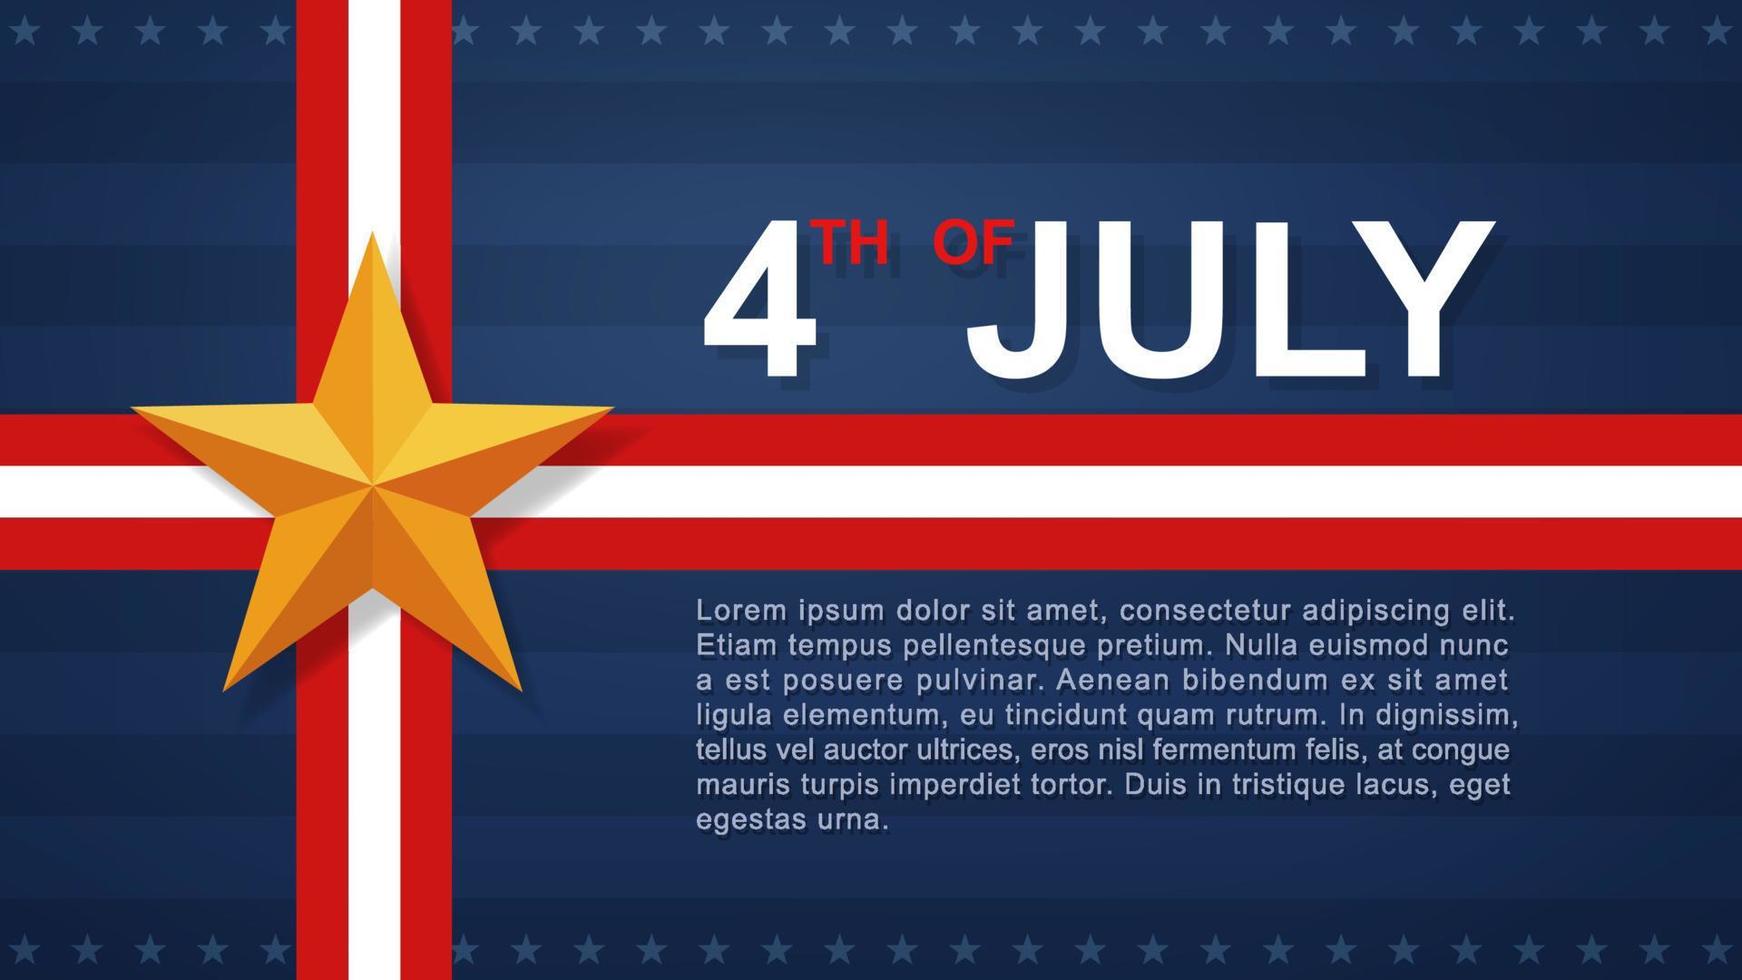 Sfondo del 4 luglio per la festa dell'indipendenza degli stati uniti d'america con mappa usa e motivo bandiera americana. illustrazione vettoriale. vettore